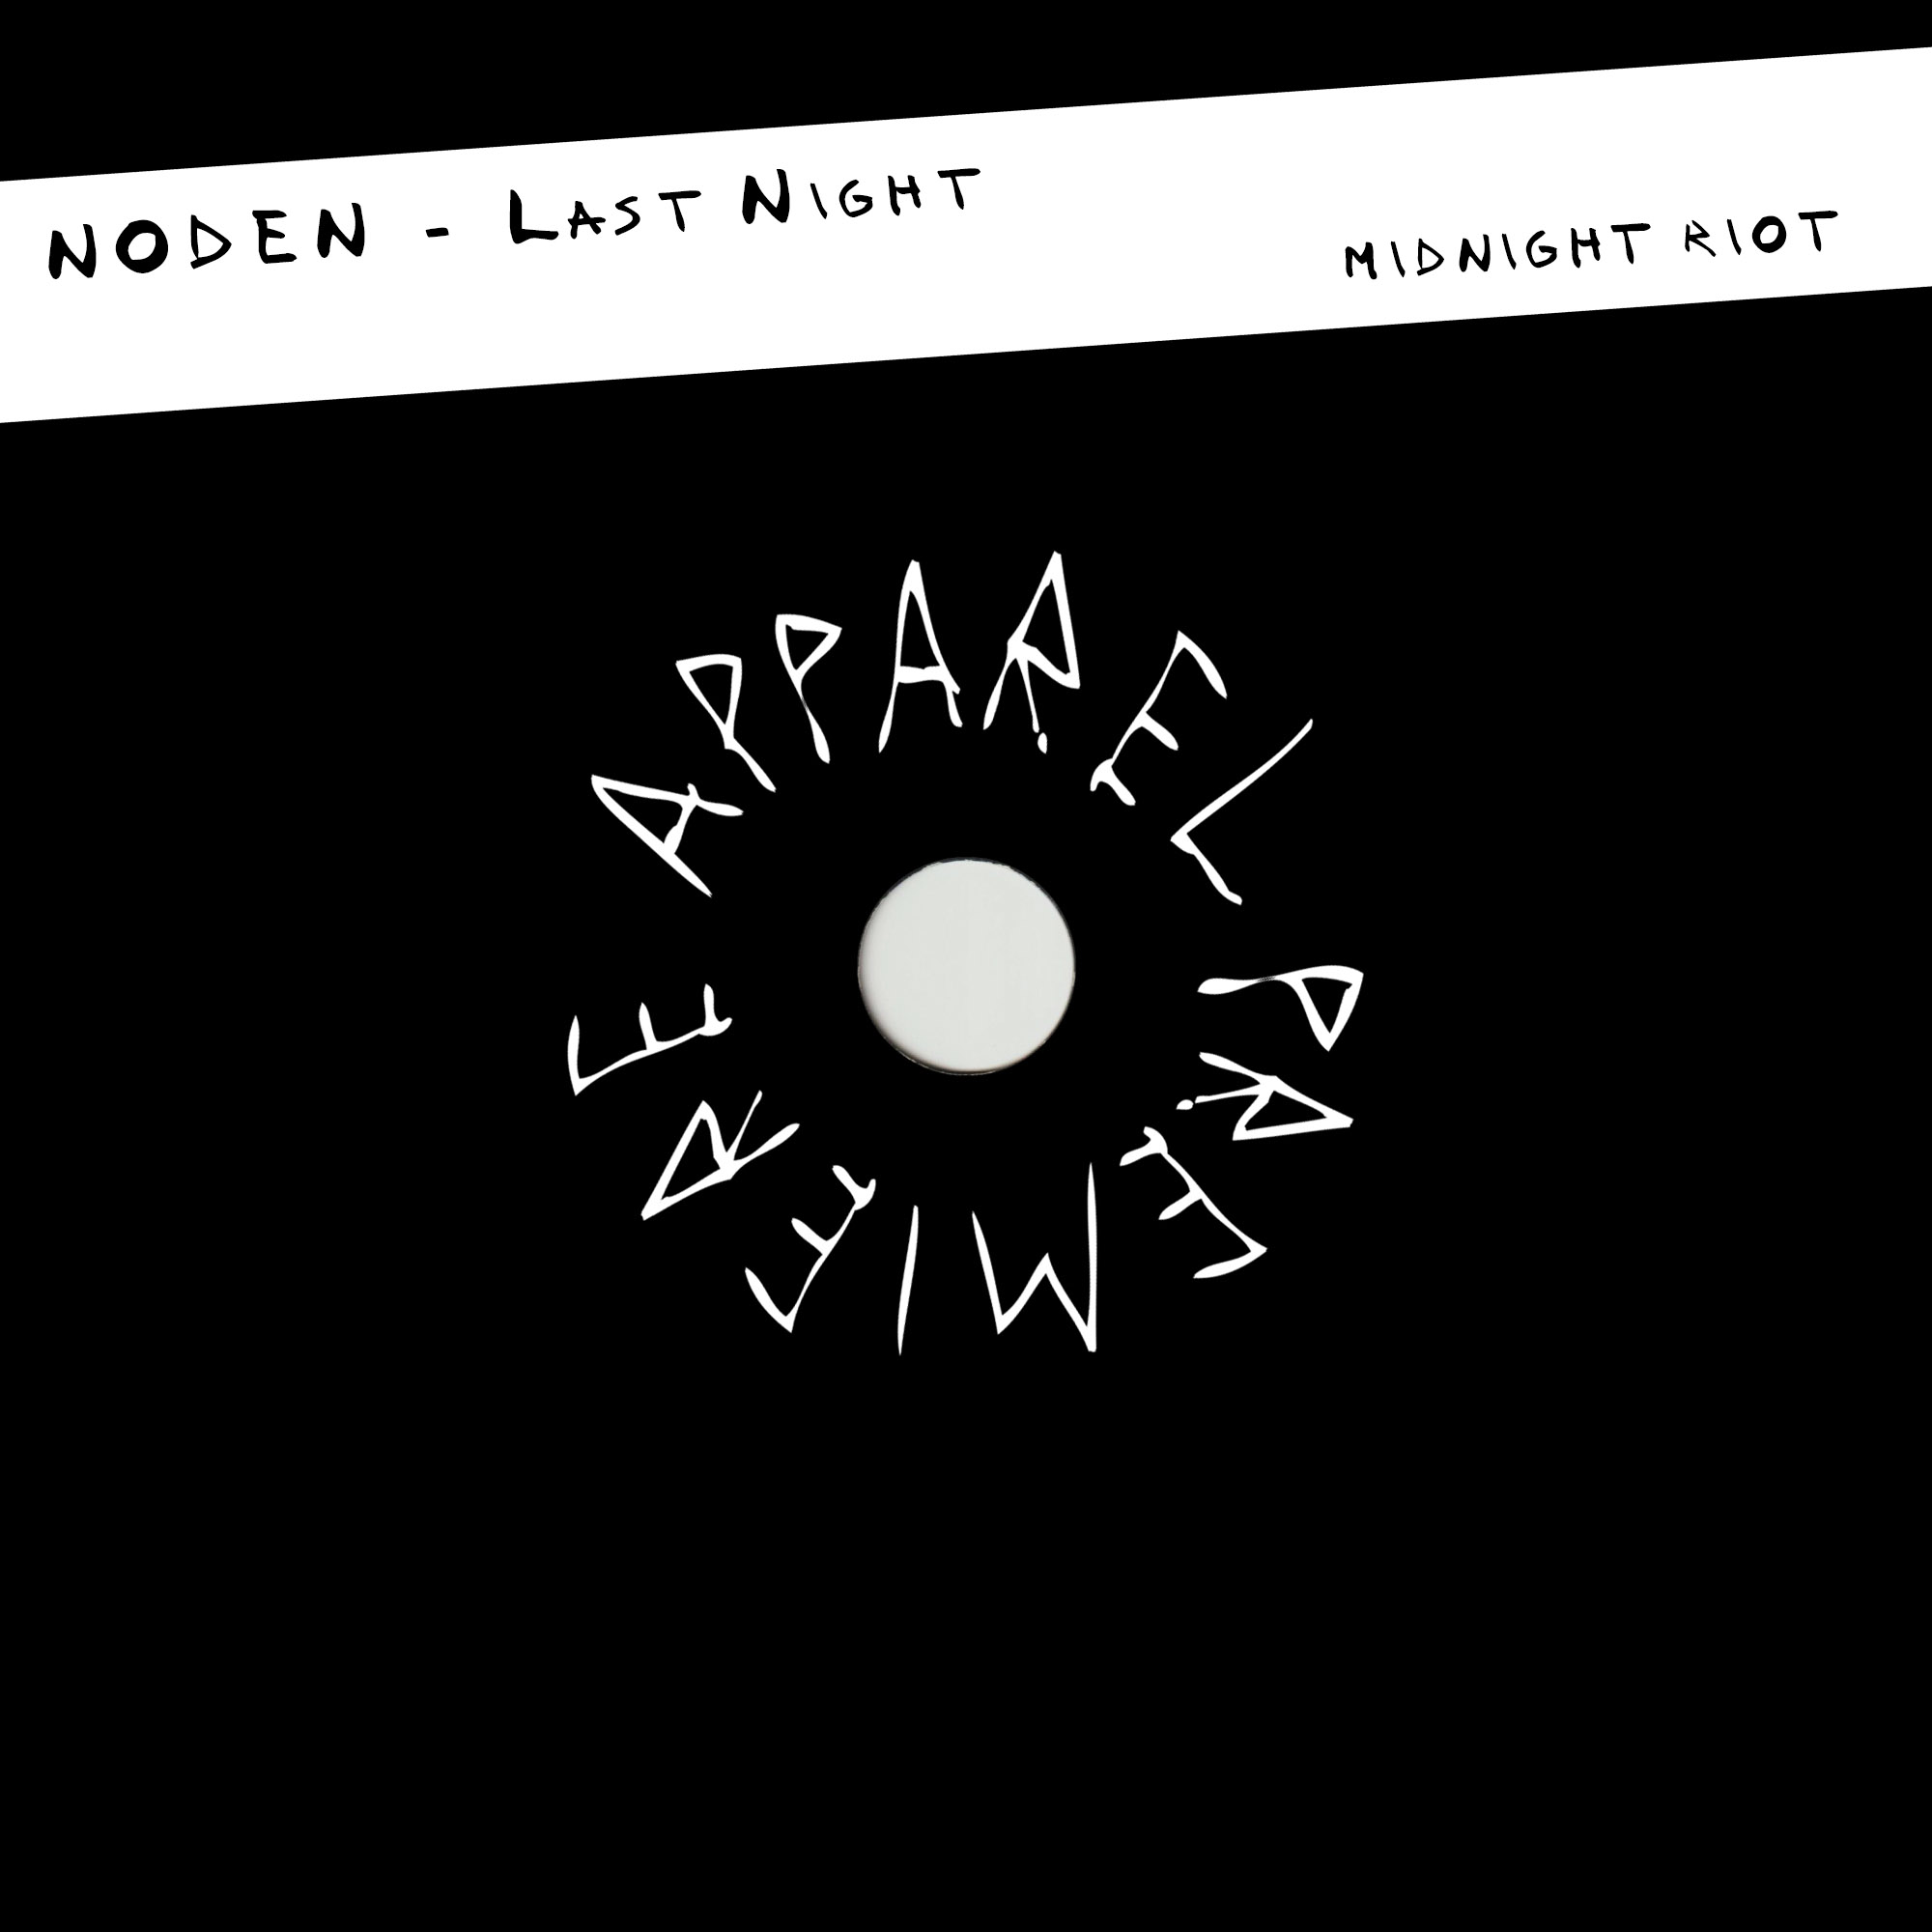 APPAREL PREMIERE NODEN – Last Night [Midnight Riot]